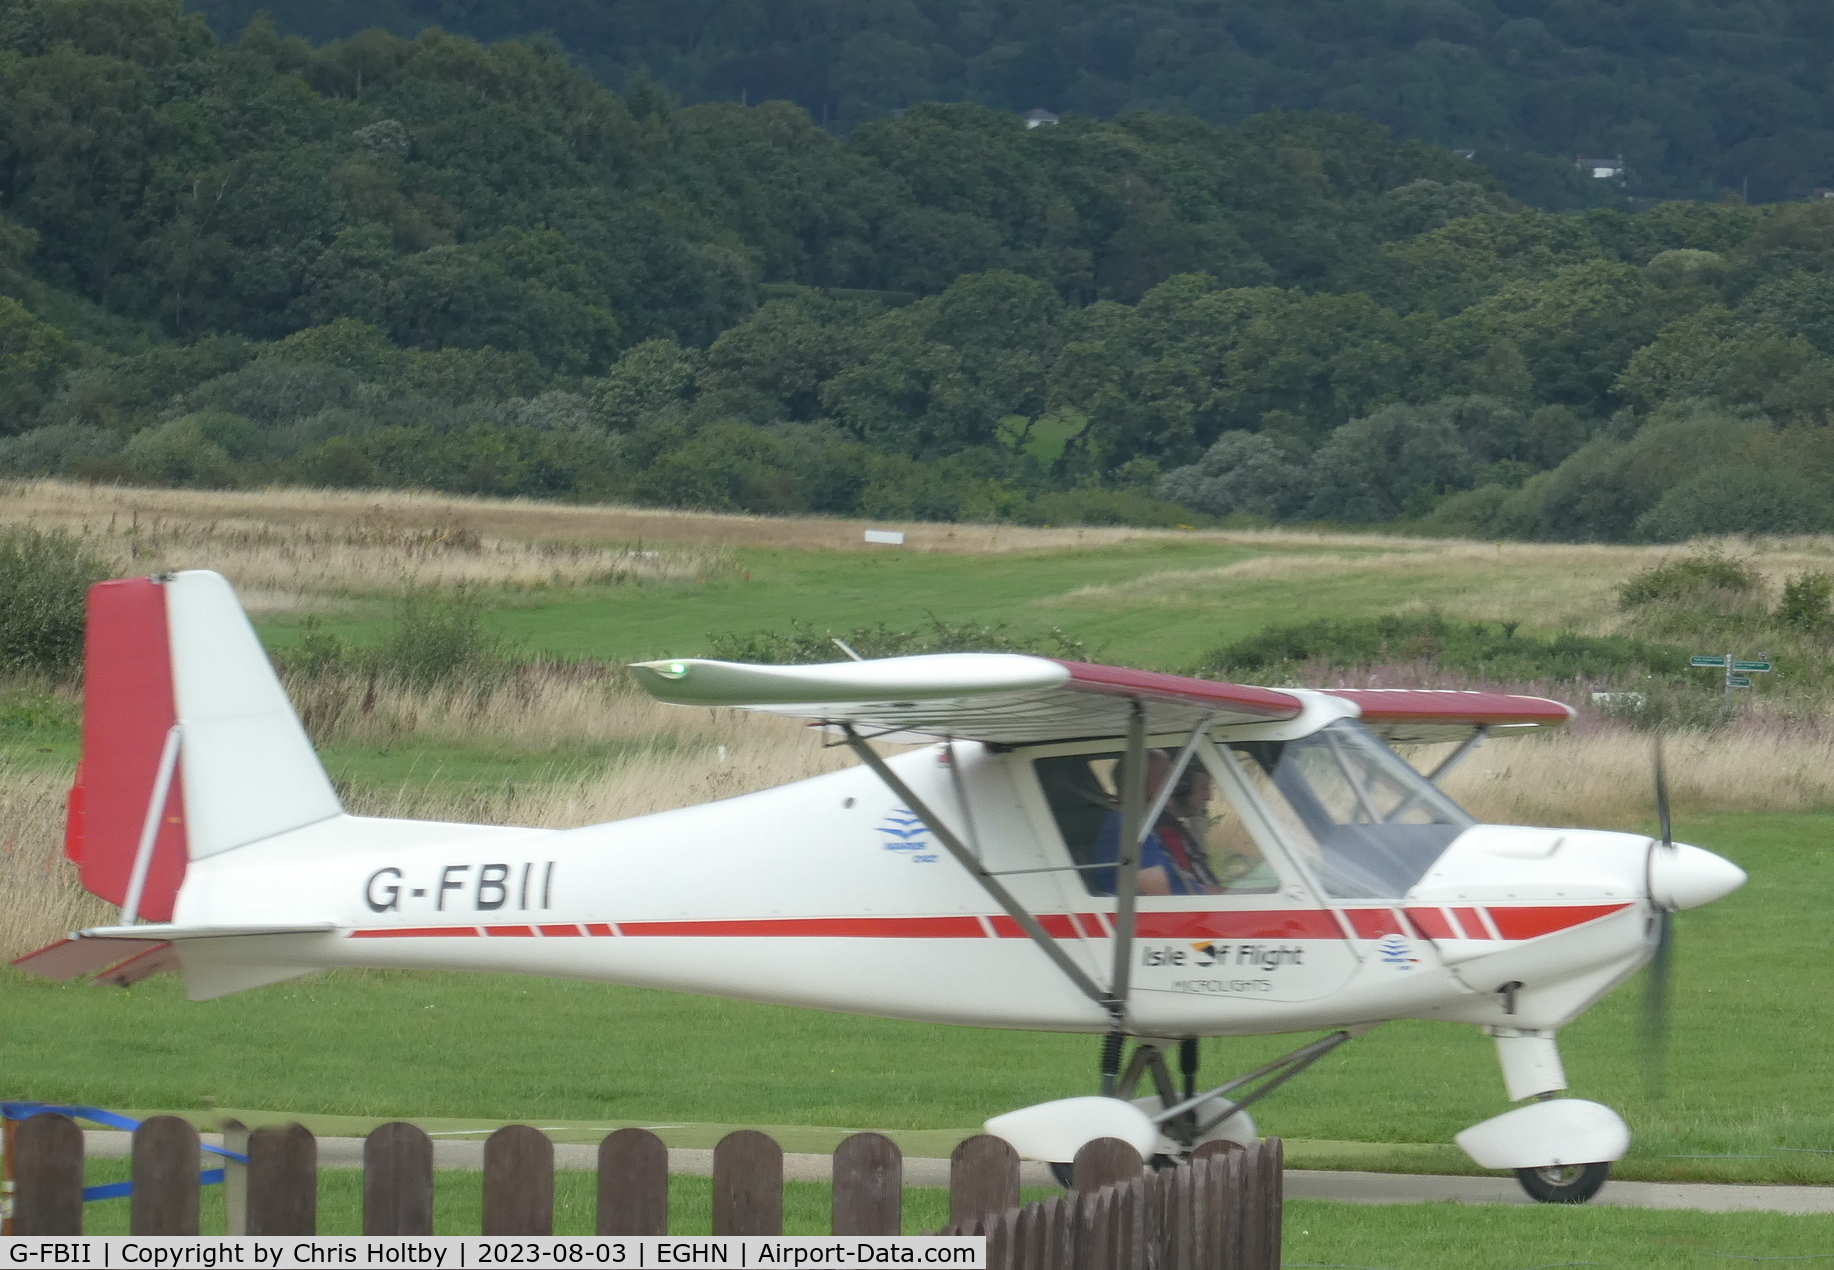 G-FBII, 2003 Comco Ikarus C42 FB100 C/N 0310-6574, Landed at Sandown Airport (EGHN) Isle of Wight